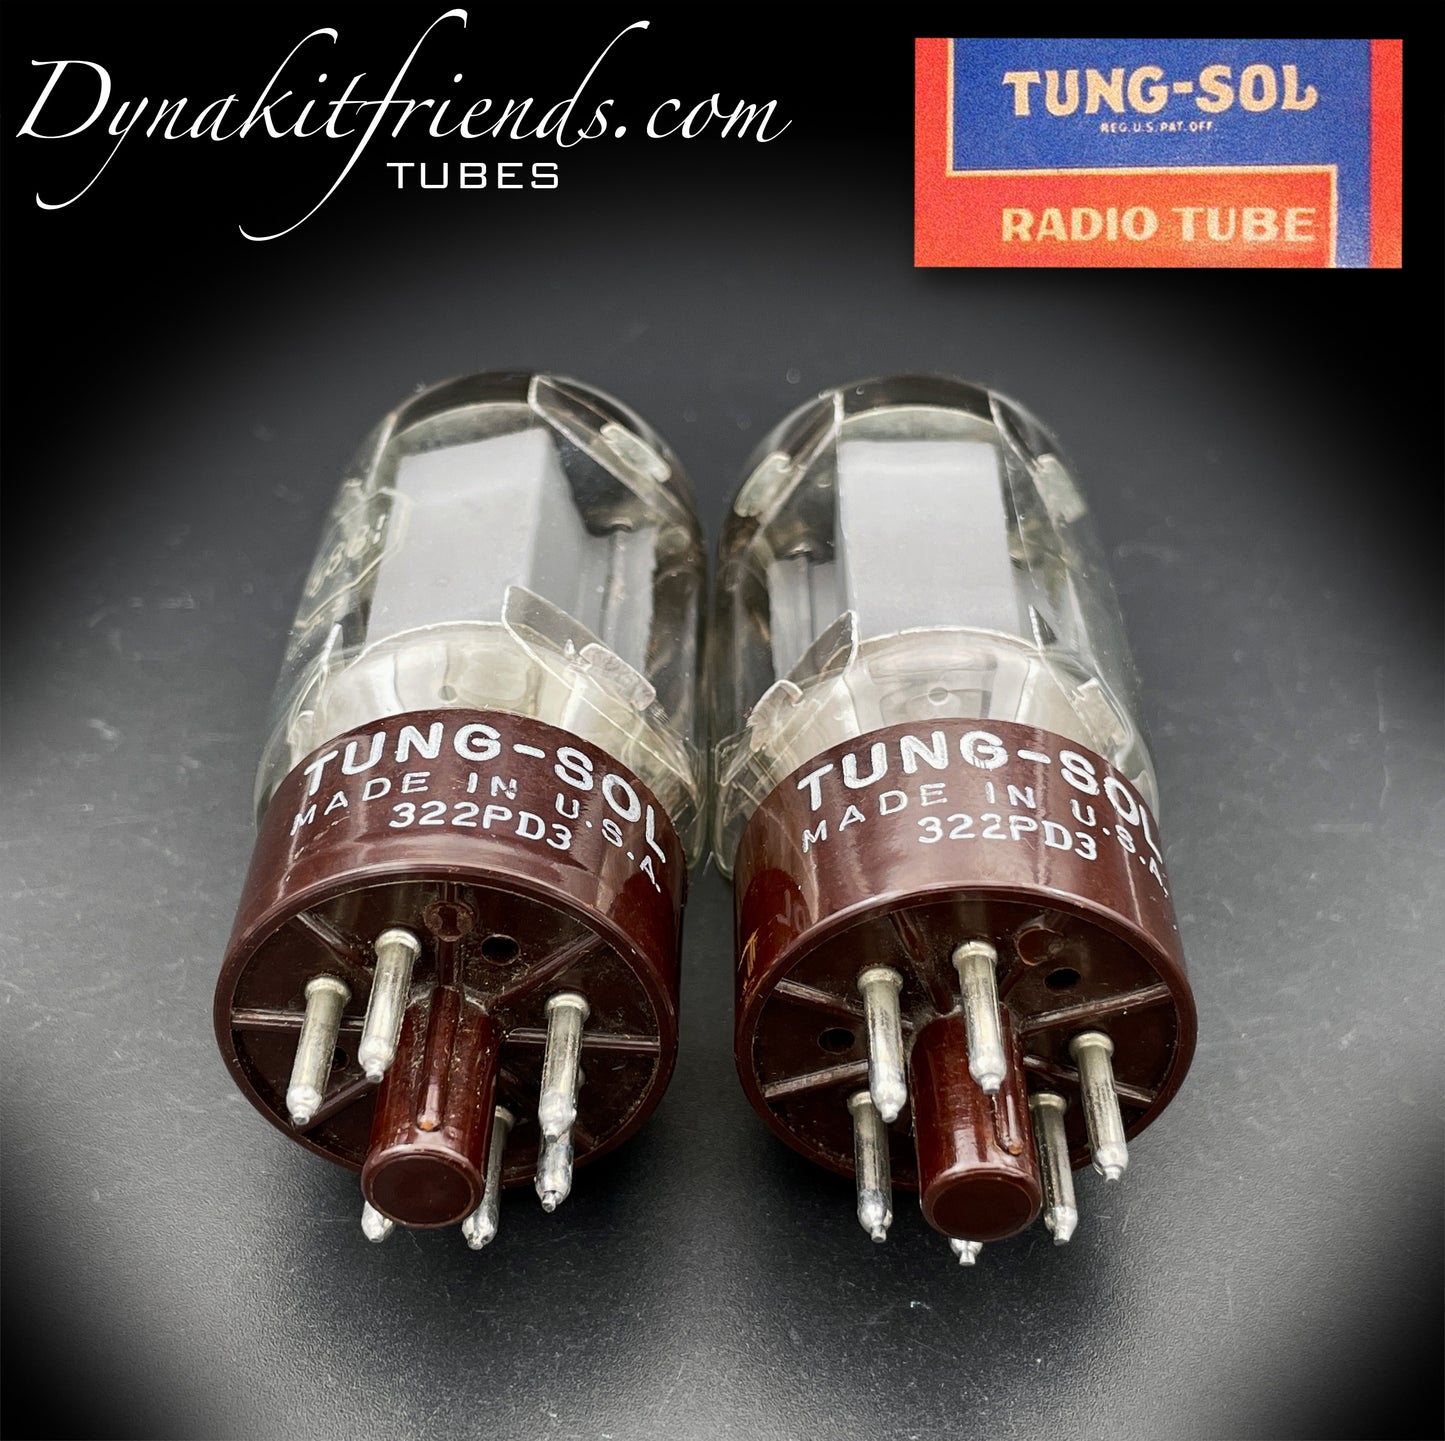 5881 (6L6WGB) TUNG-SOL passendes Paar Vakuumröhren mit braunem Sockel, hergestellt in den USA